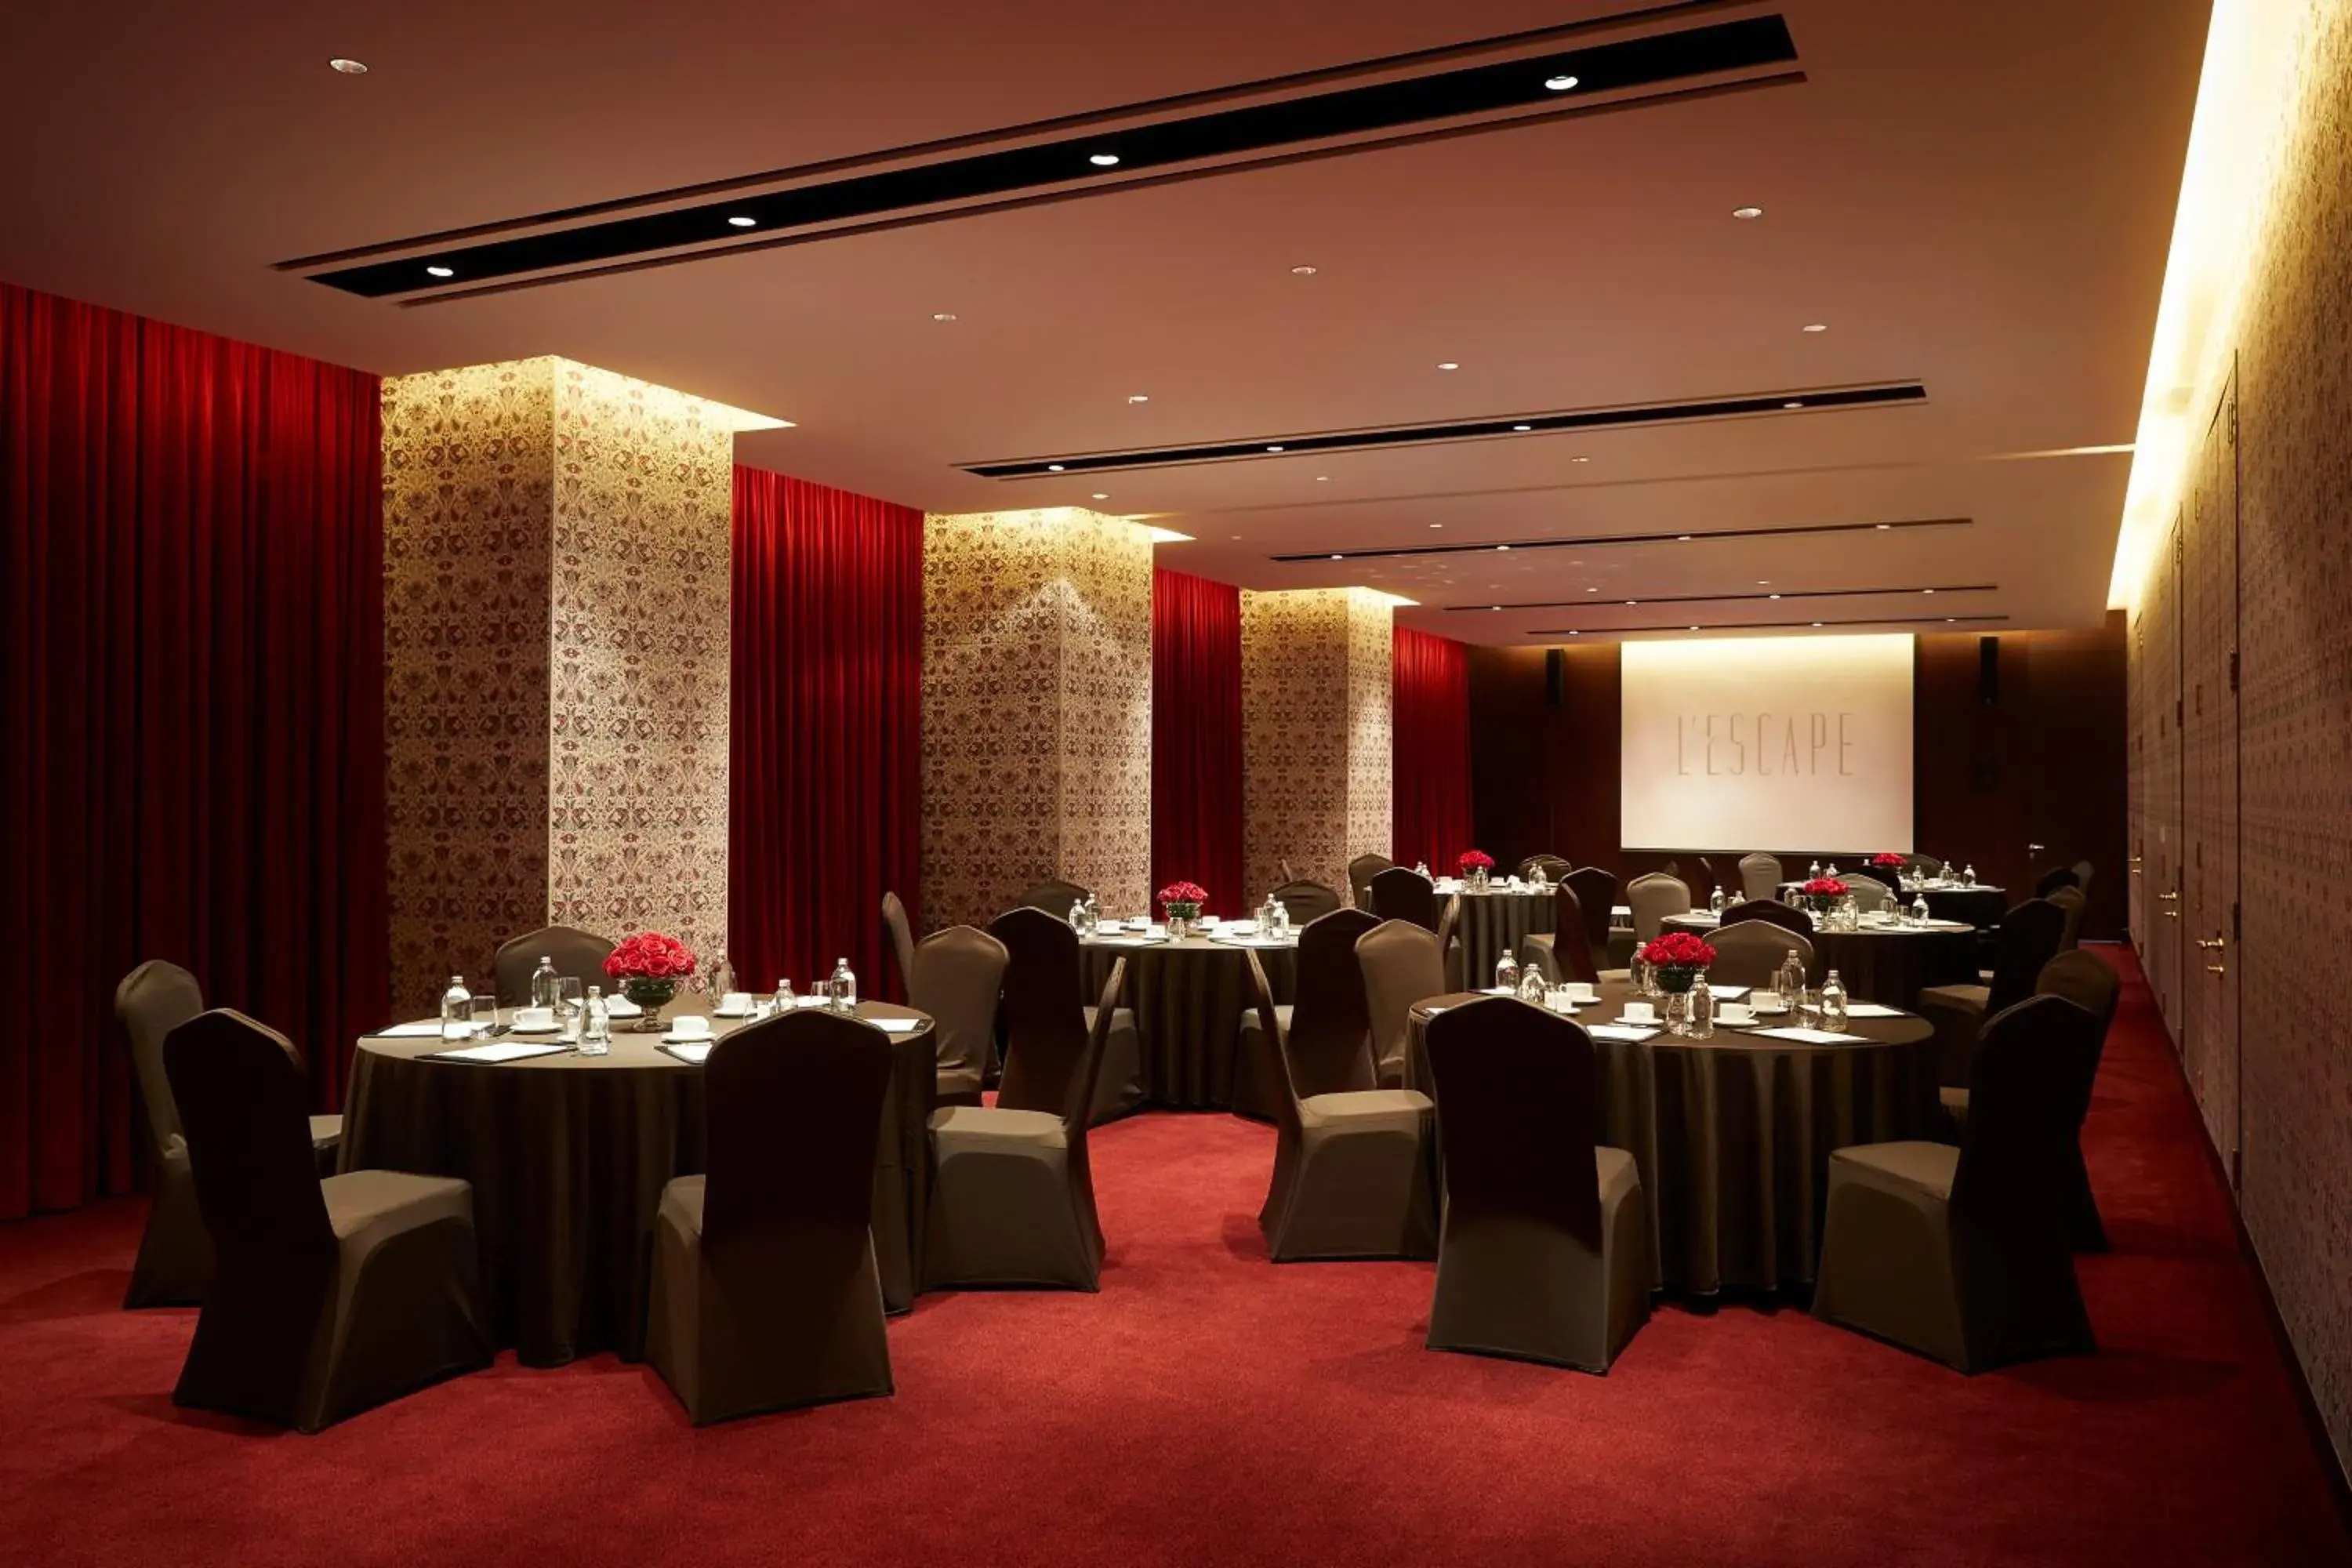 Banquet/Function facilities, Banquet Facilities in L'Escape Hotel